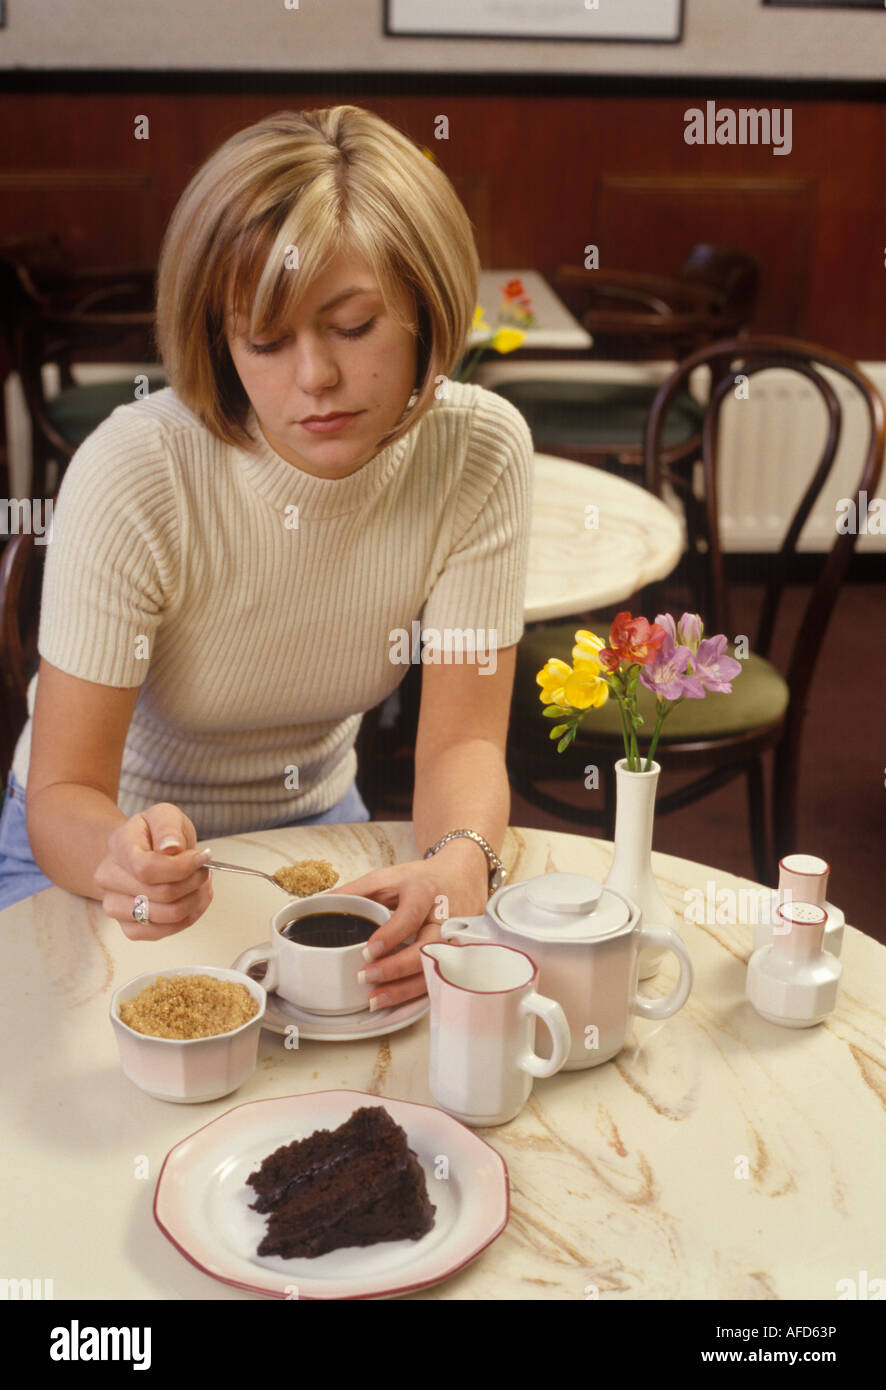 Déprimé woman putting le sucre dans son café Banque D'Images